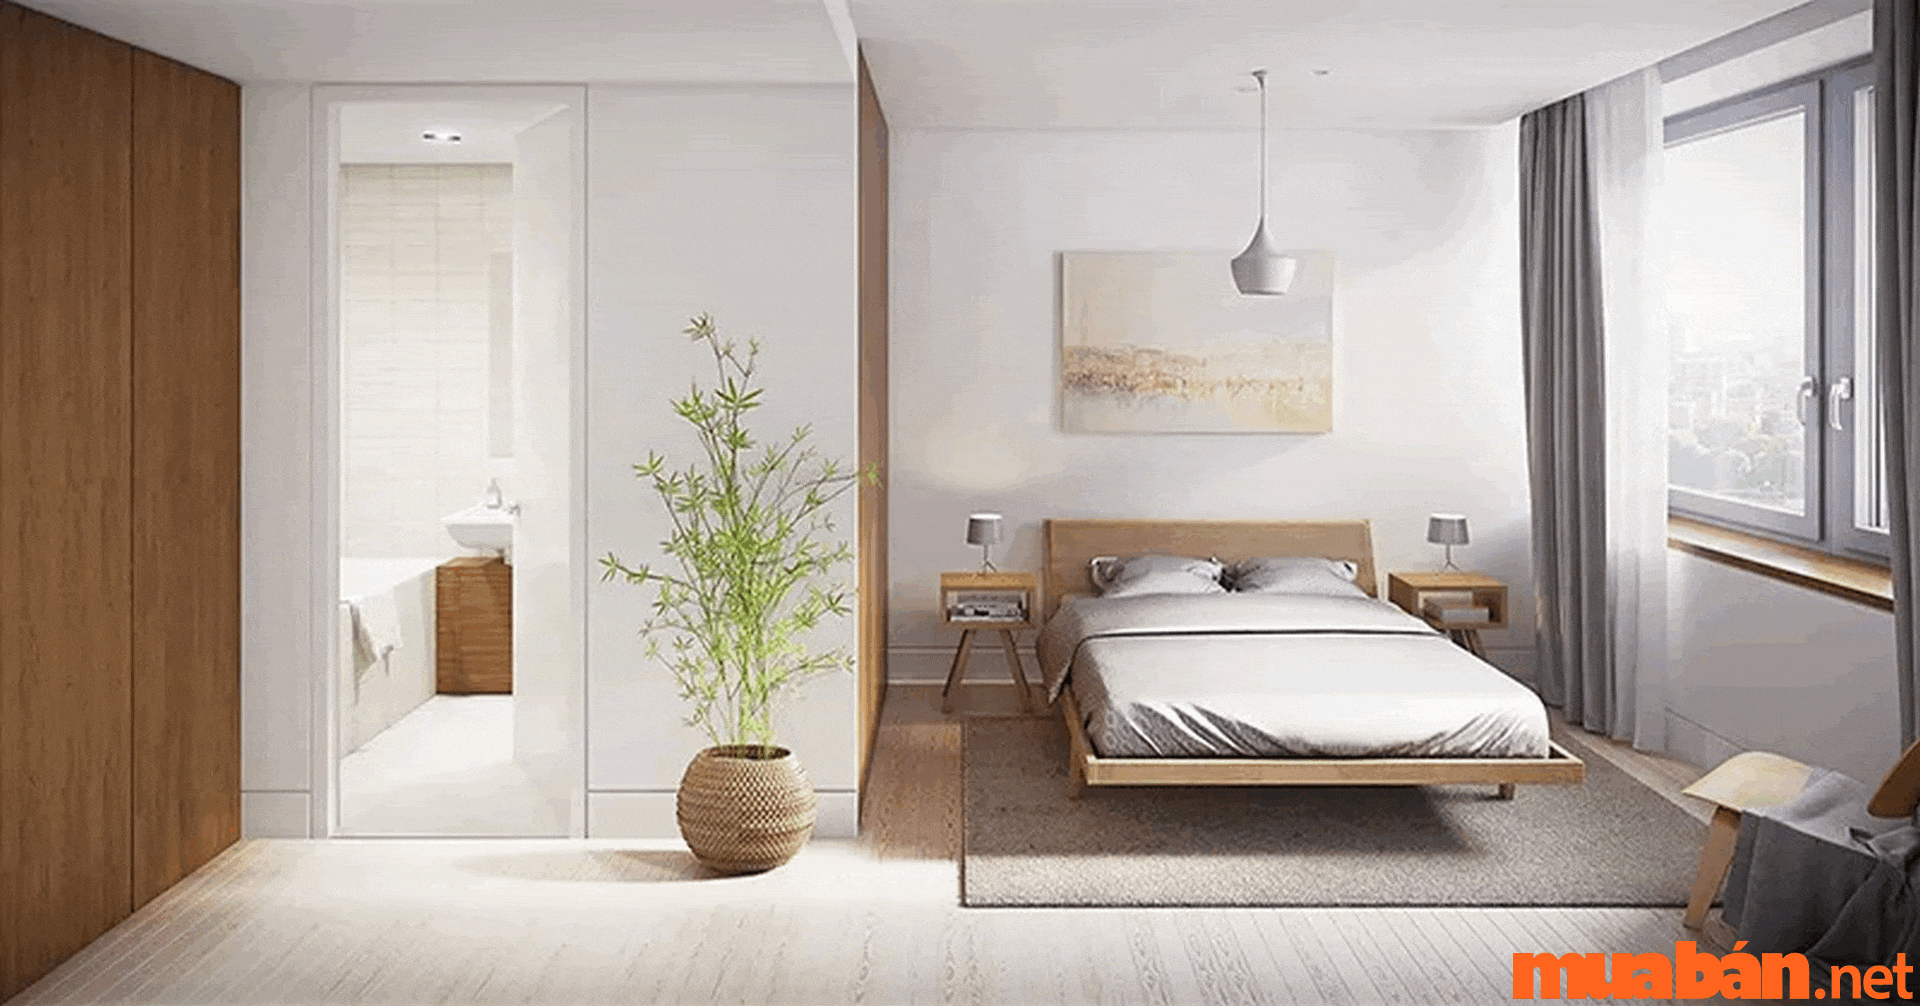 Việc tối giản nội thất cũng rất được chú trọng để decor phòng ngủ nhỏ chill